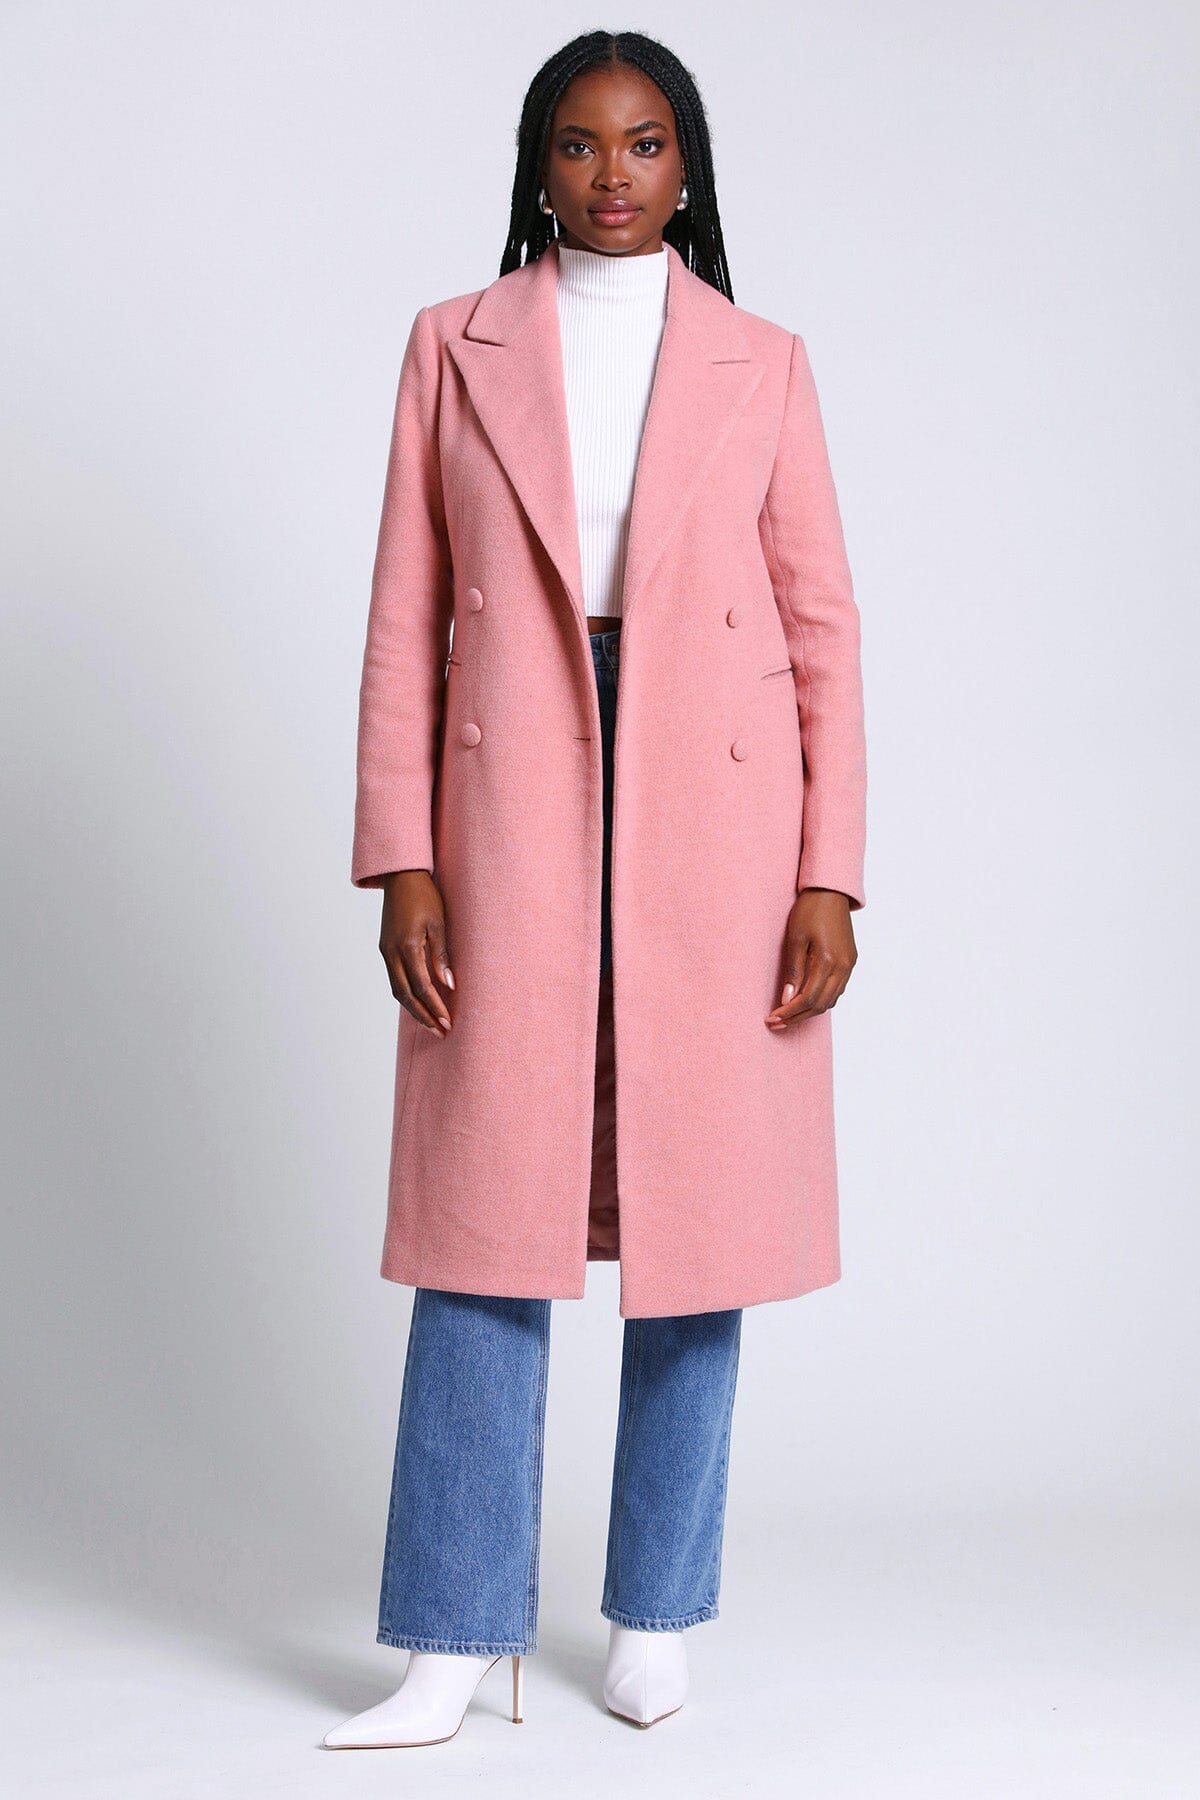 Women Faux Wool Warm Slim Coat Jacket Thick-Parka Overcoat Long Winter  Outwear | eBay